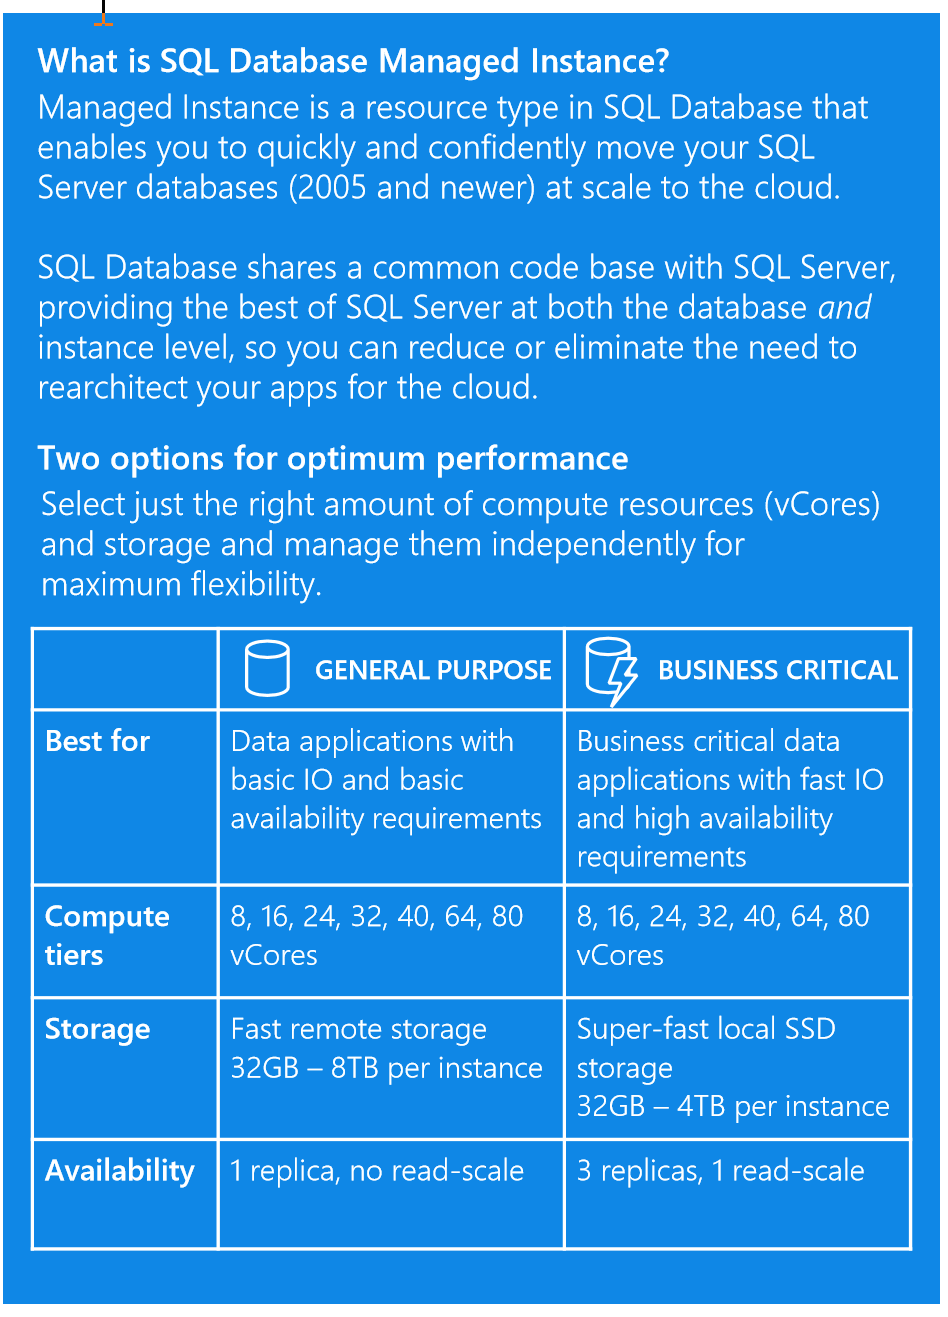 Utilizing Azure SQL Database